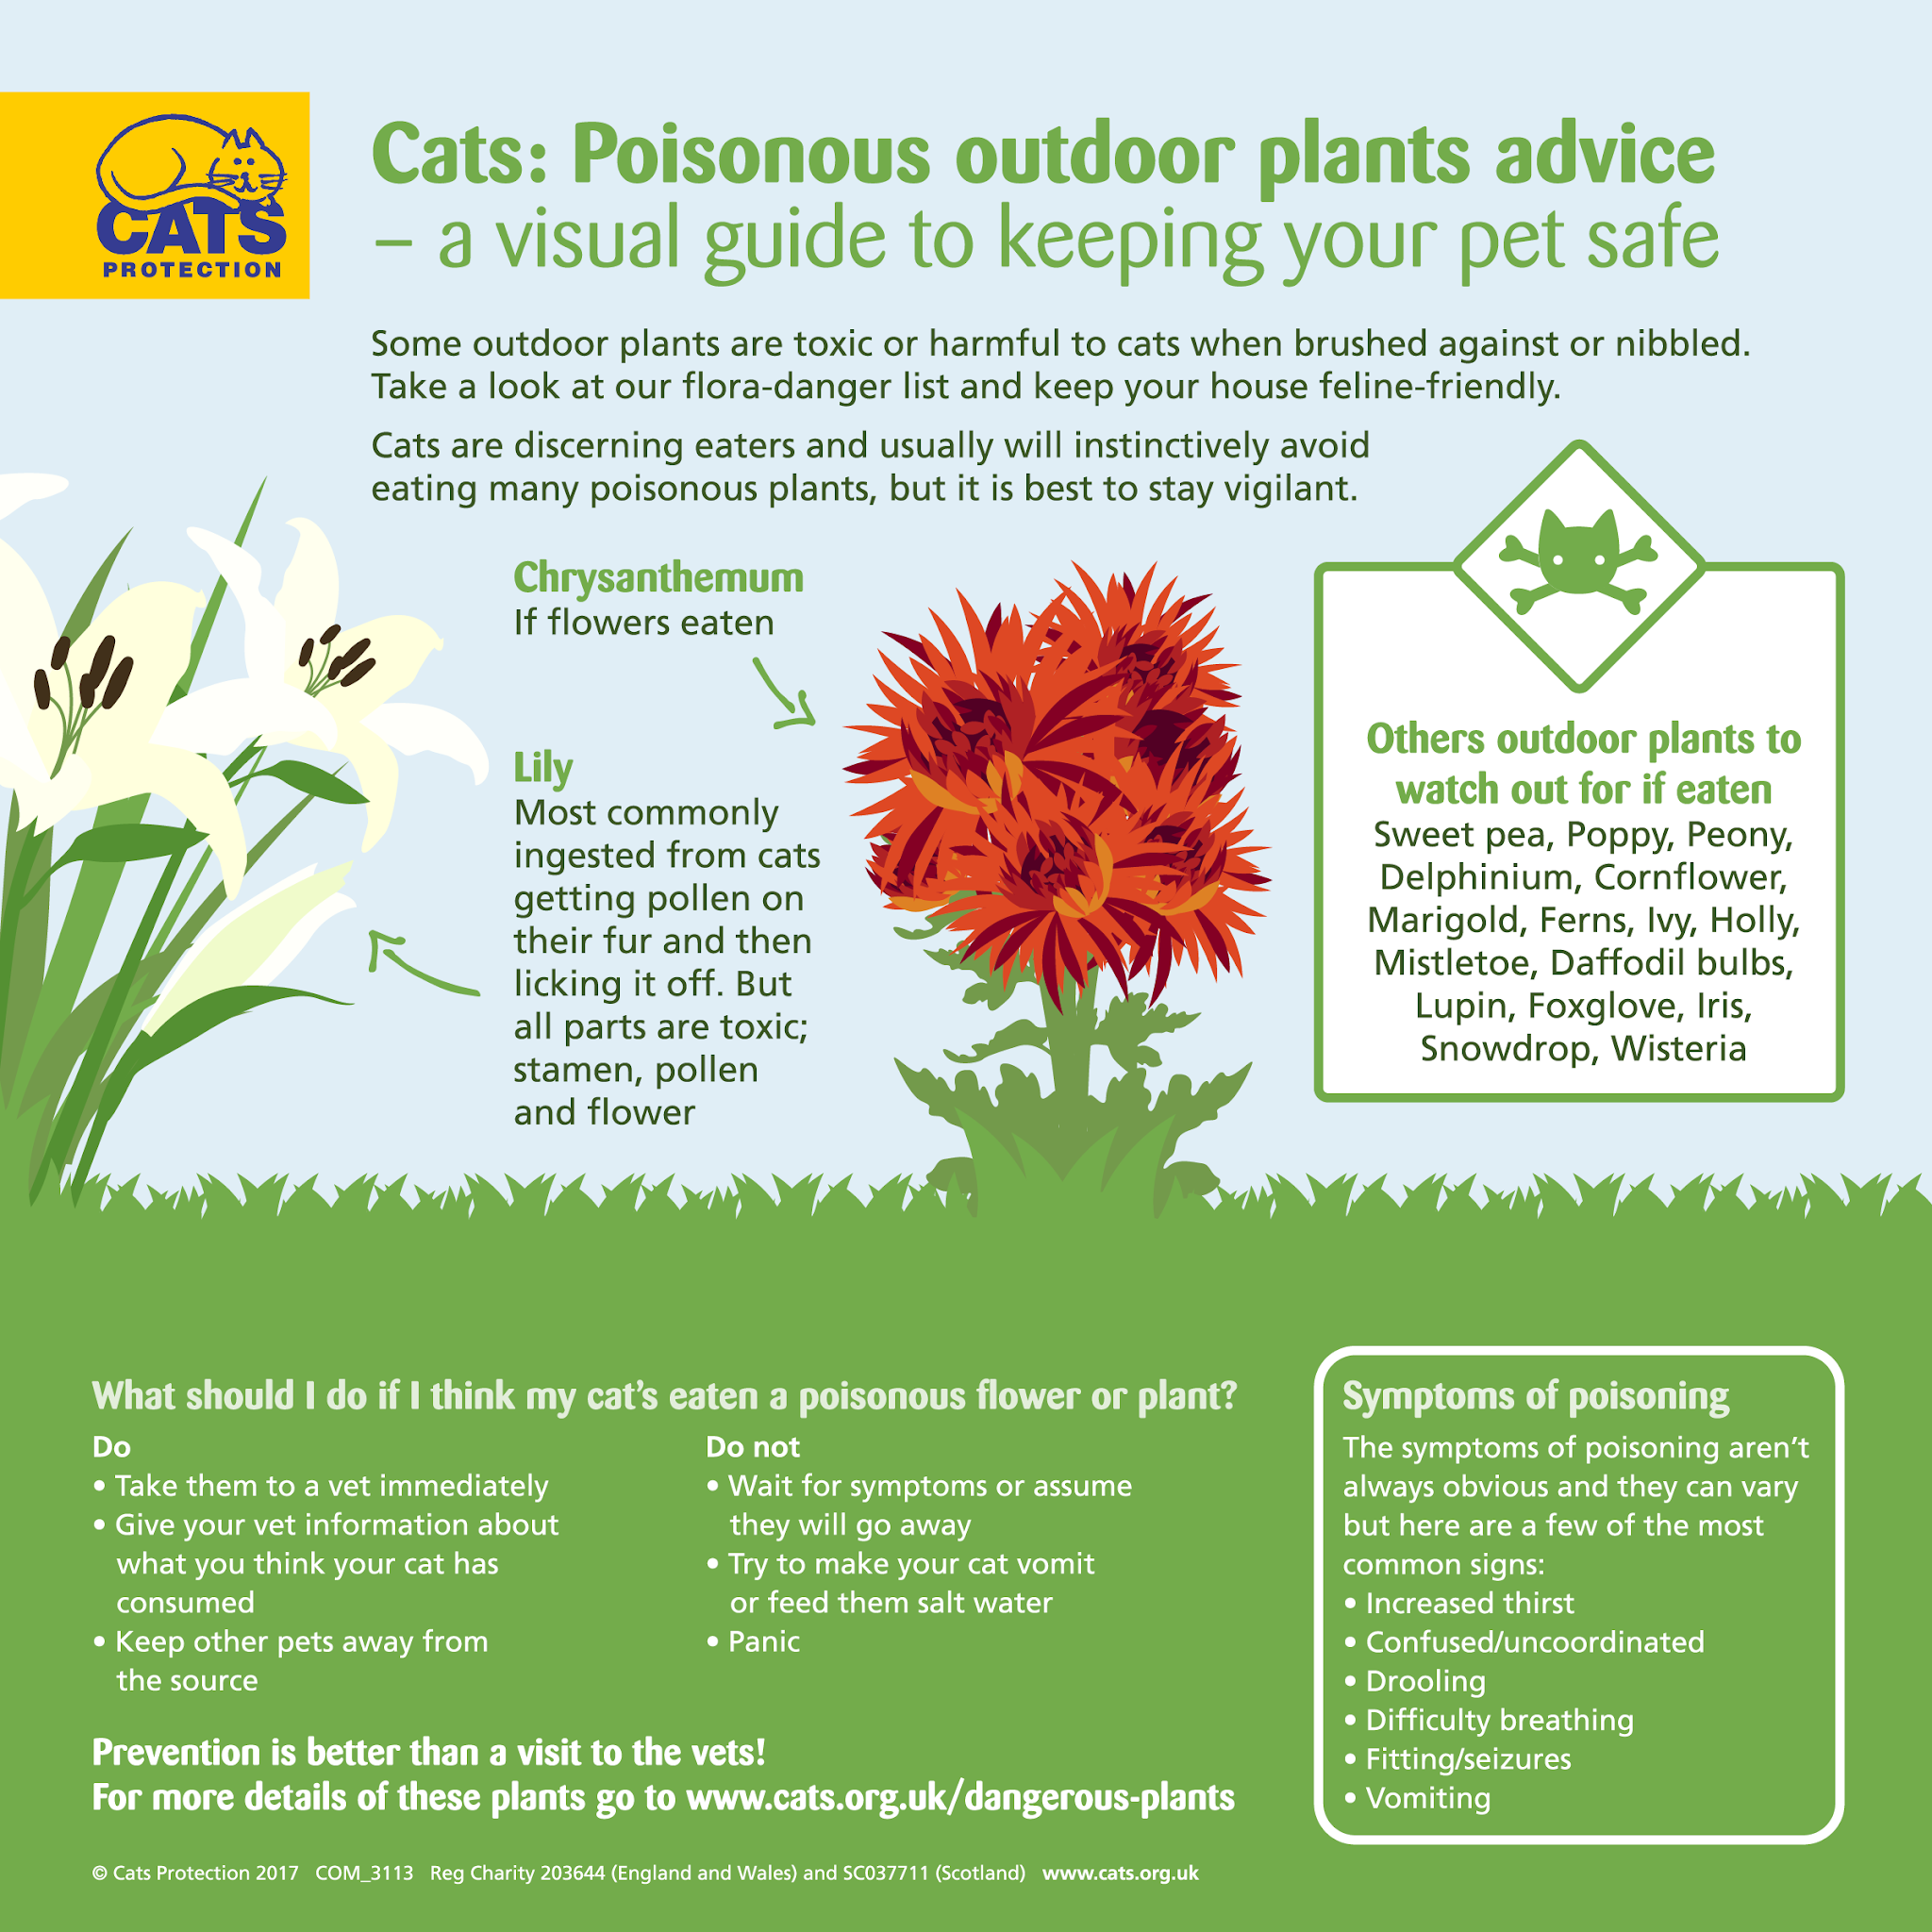 Избегайте ядовитых садовых растений и обеспечьте безопасность вашей кошки.